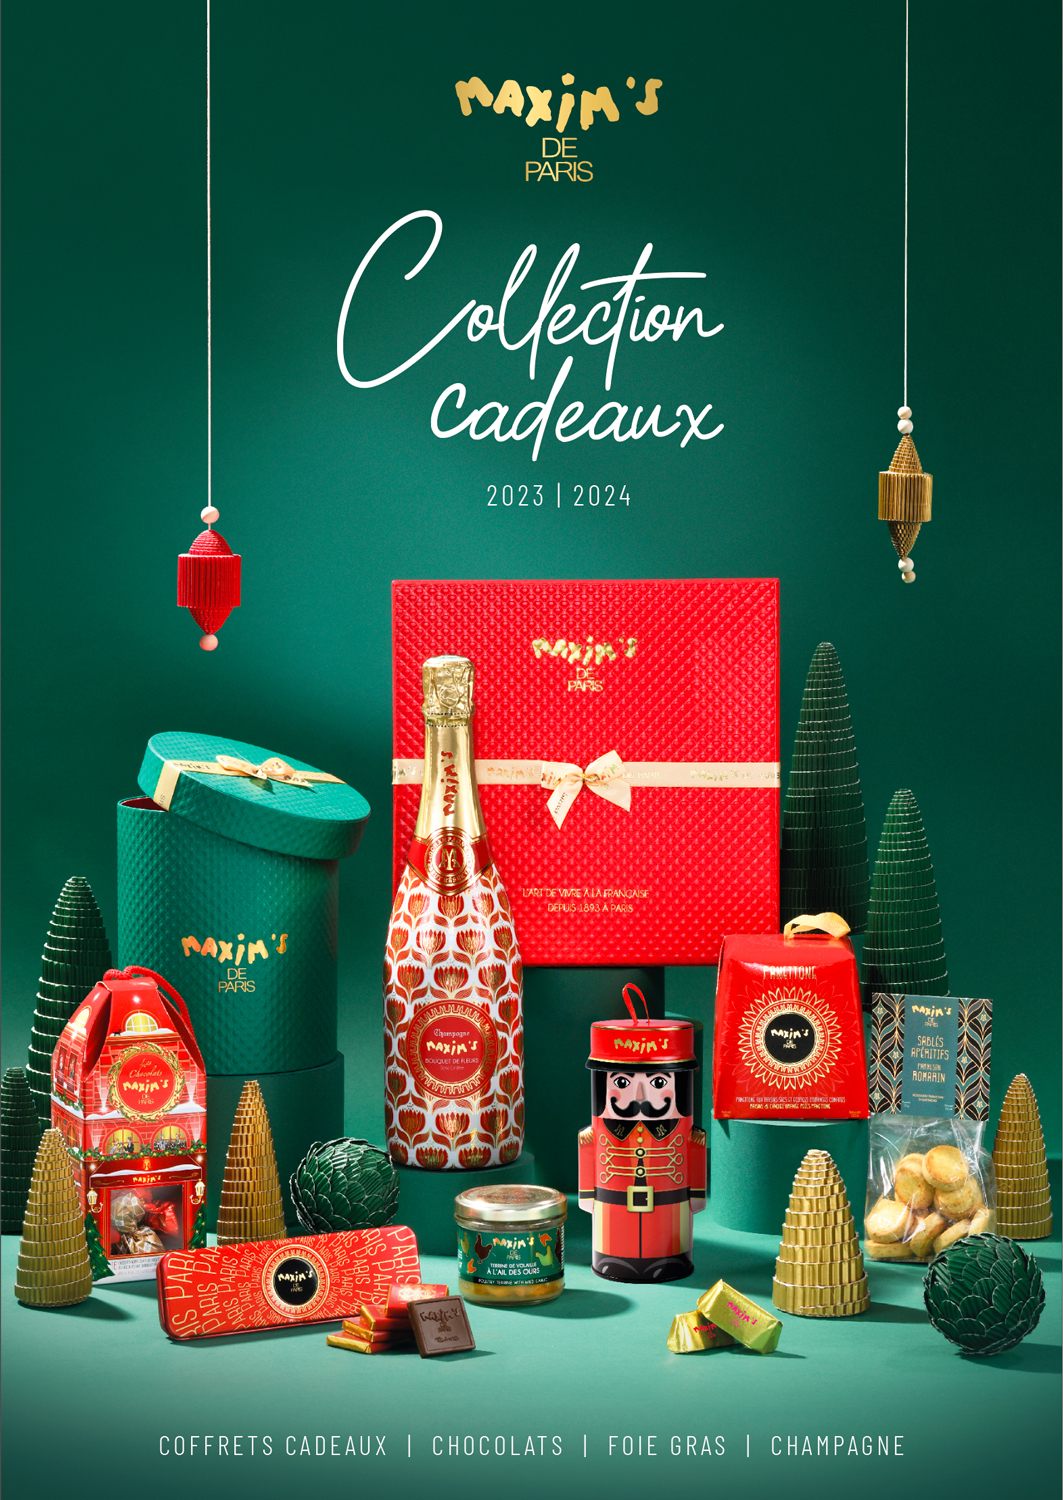 Collection cadeaux - Devis - Maxim's shop